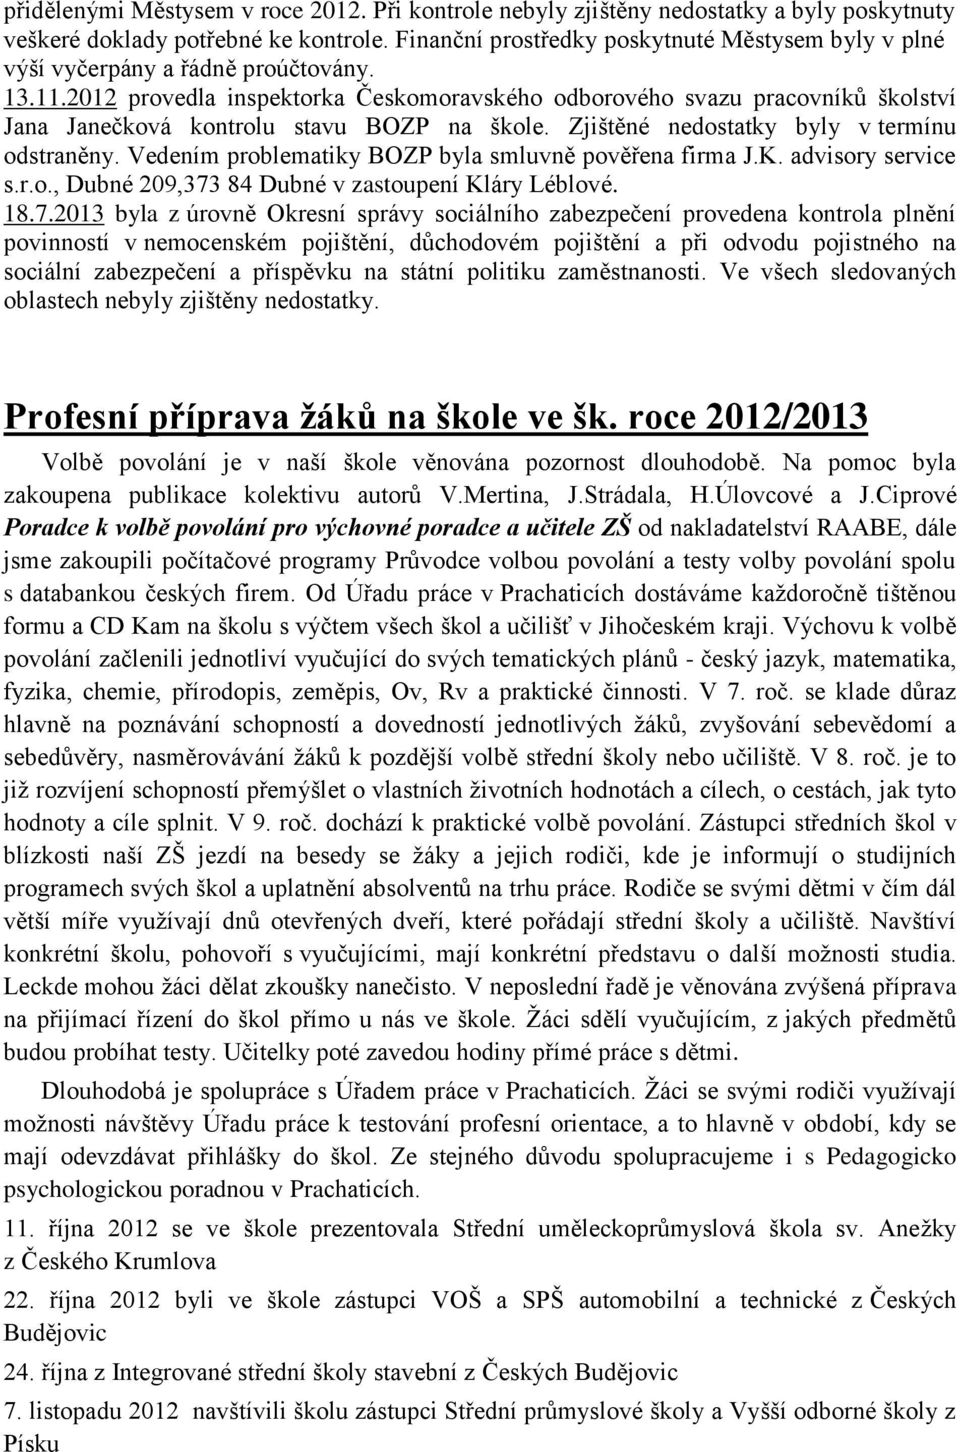 2012 provedla inspektorka Českomoravského odborového svazu pracovníků školství Jana Janečková kontrolu stavu BOZP na škole. Zjištěné nedostatky byly v termínu odstraněny.